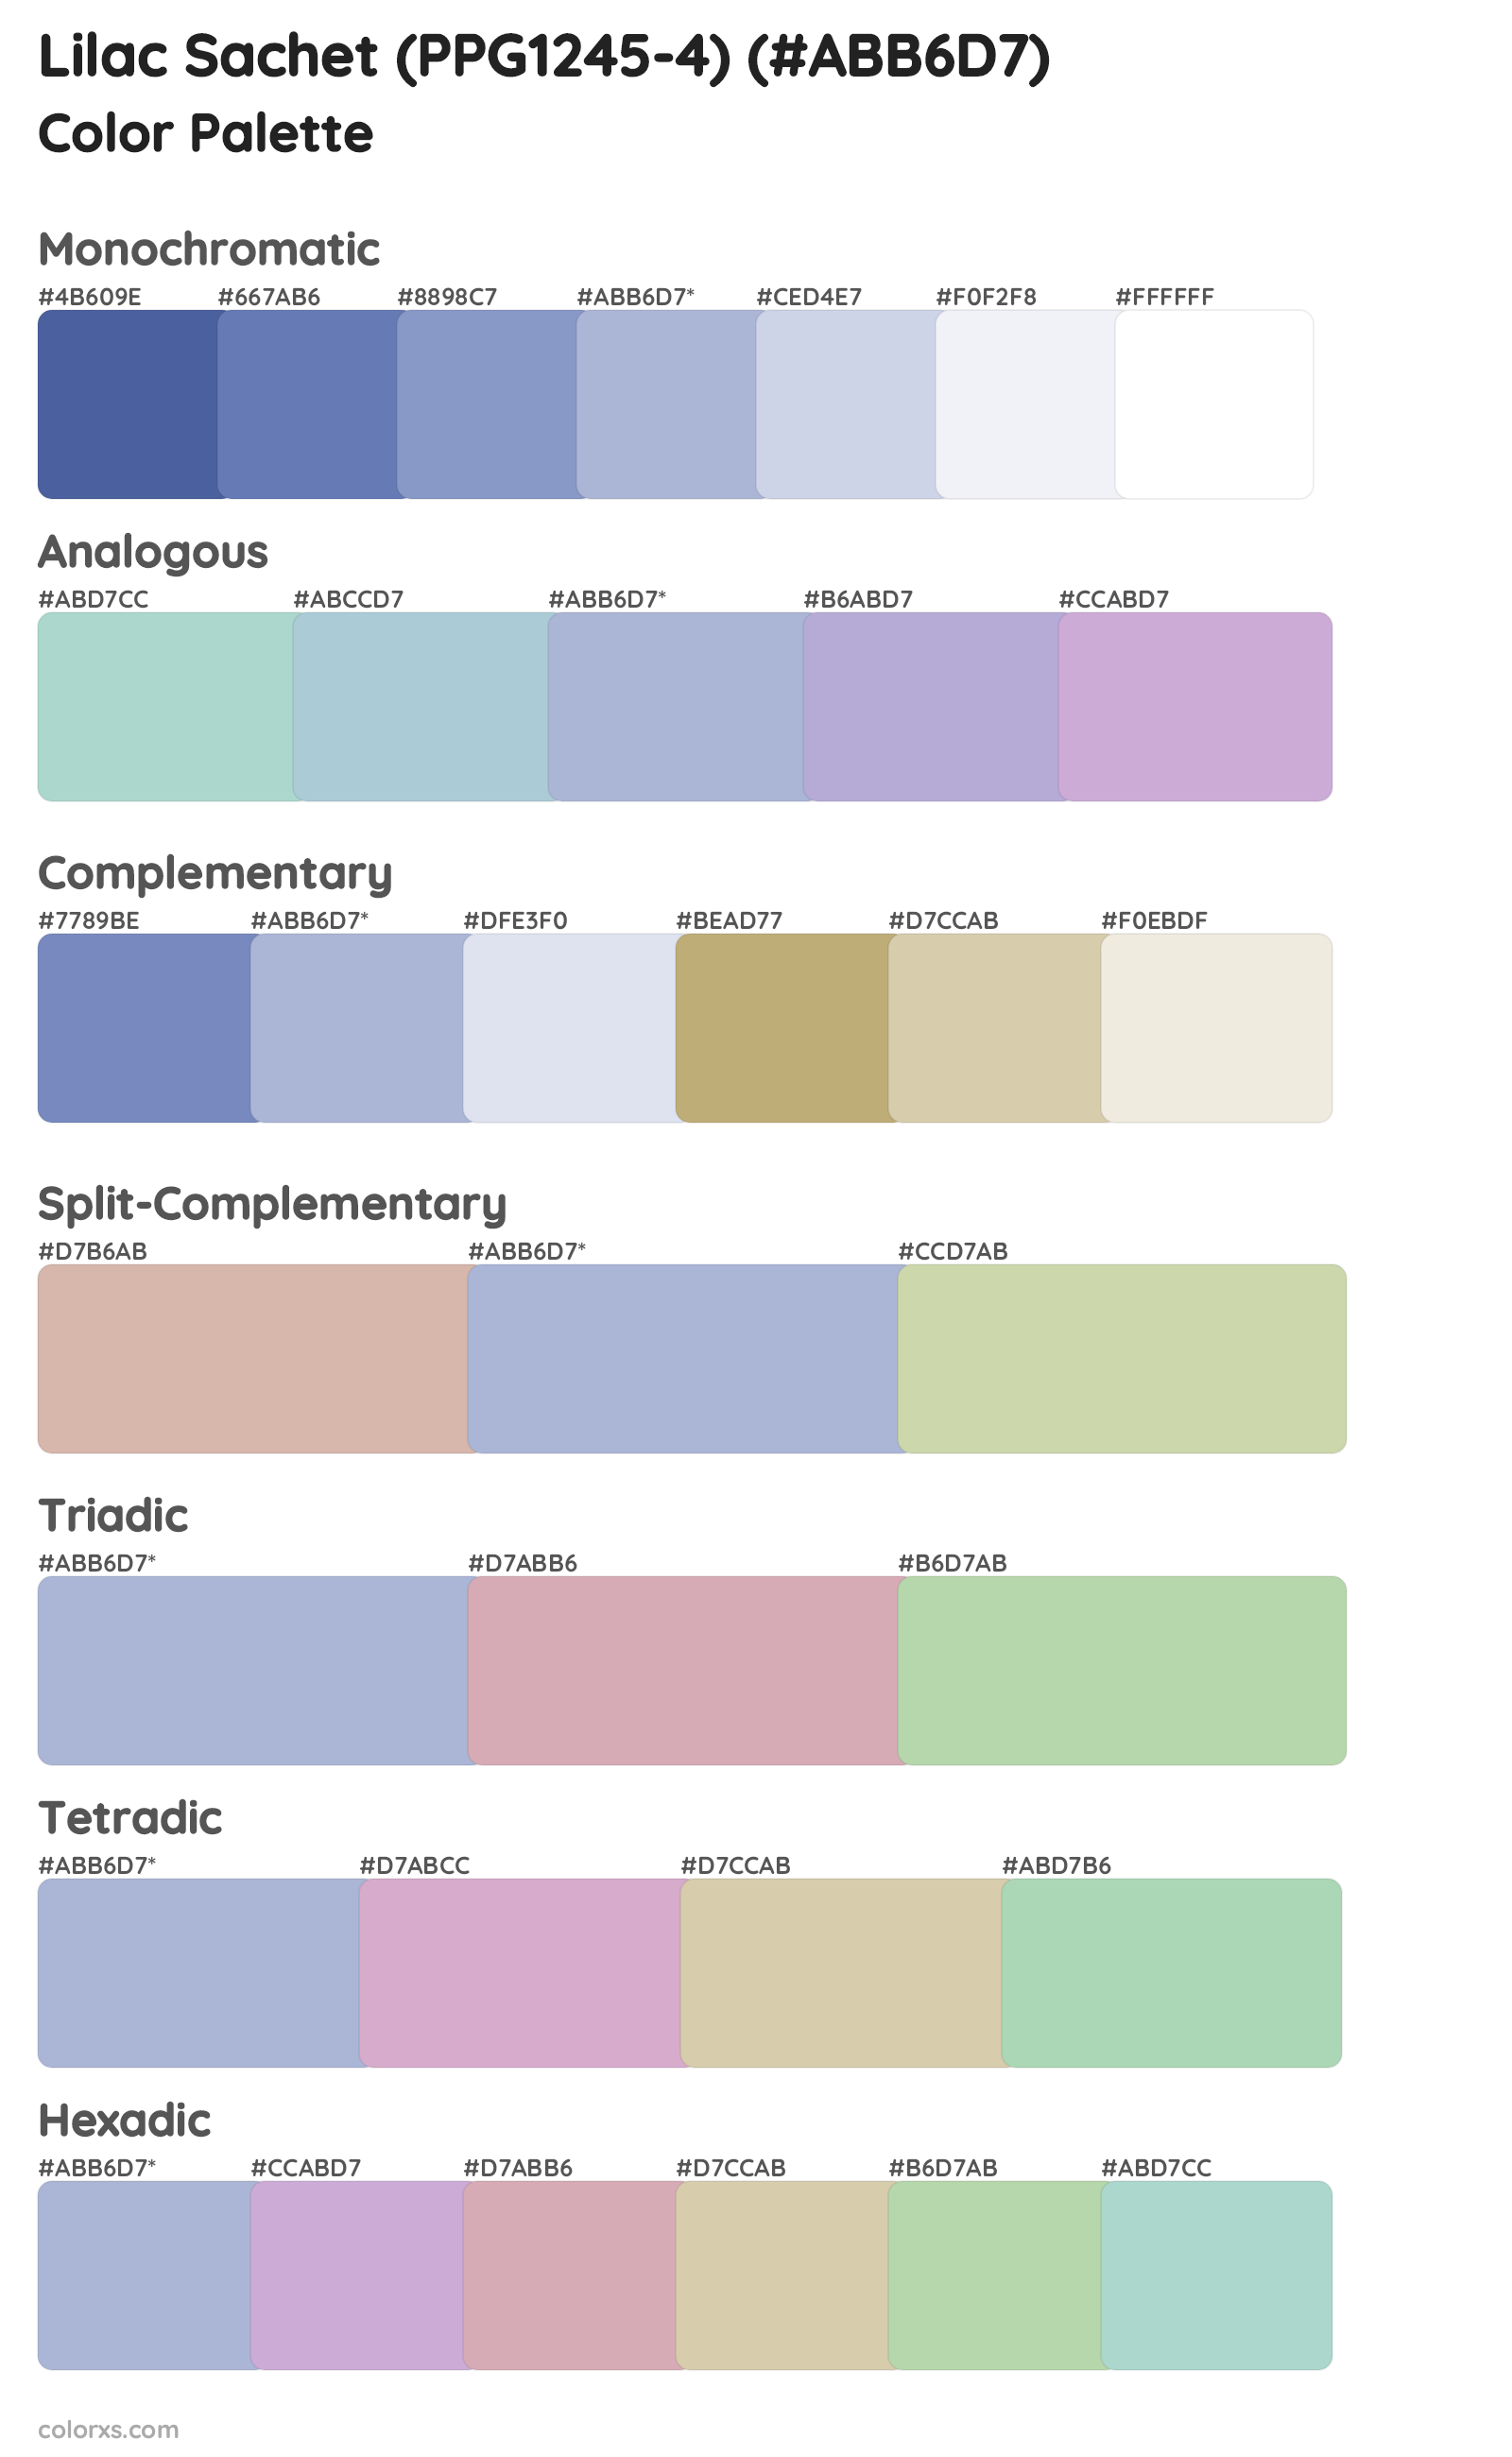 Lilac Sachet (PPG1245-4) Color Scheme Palettes